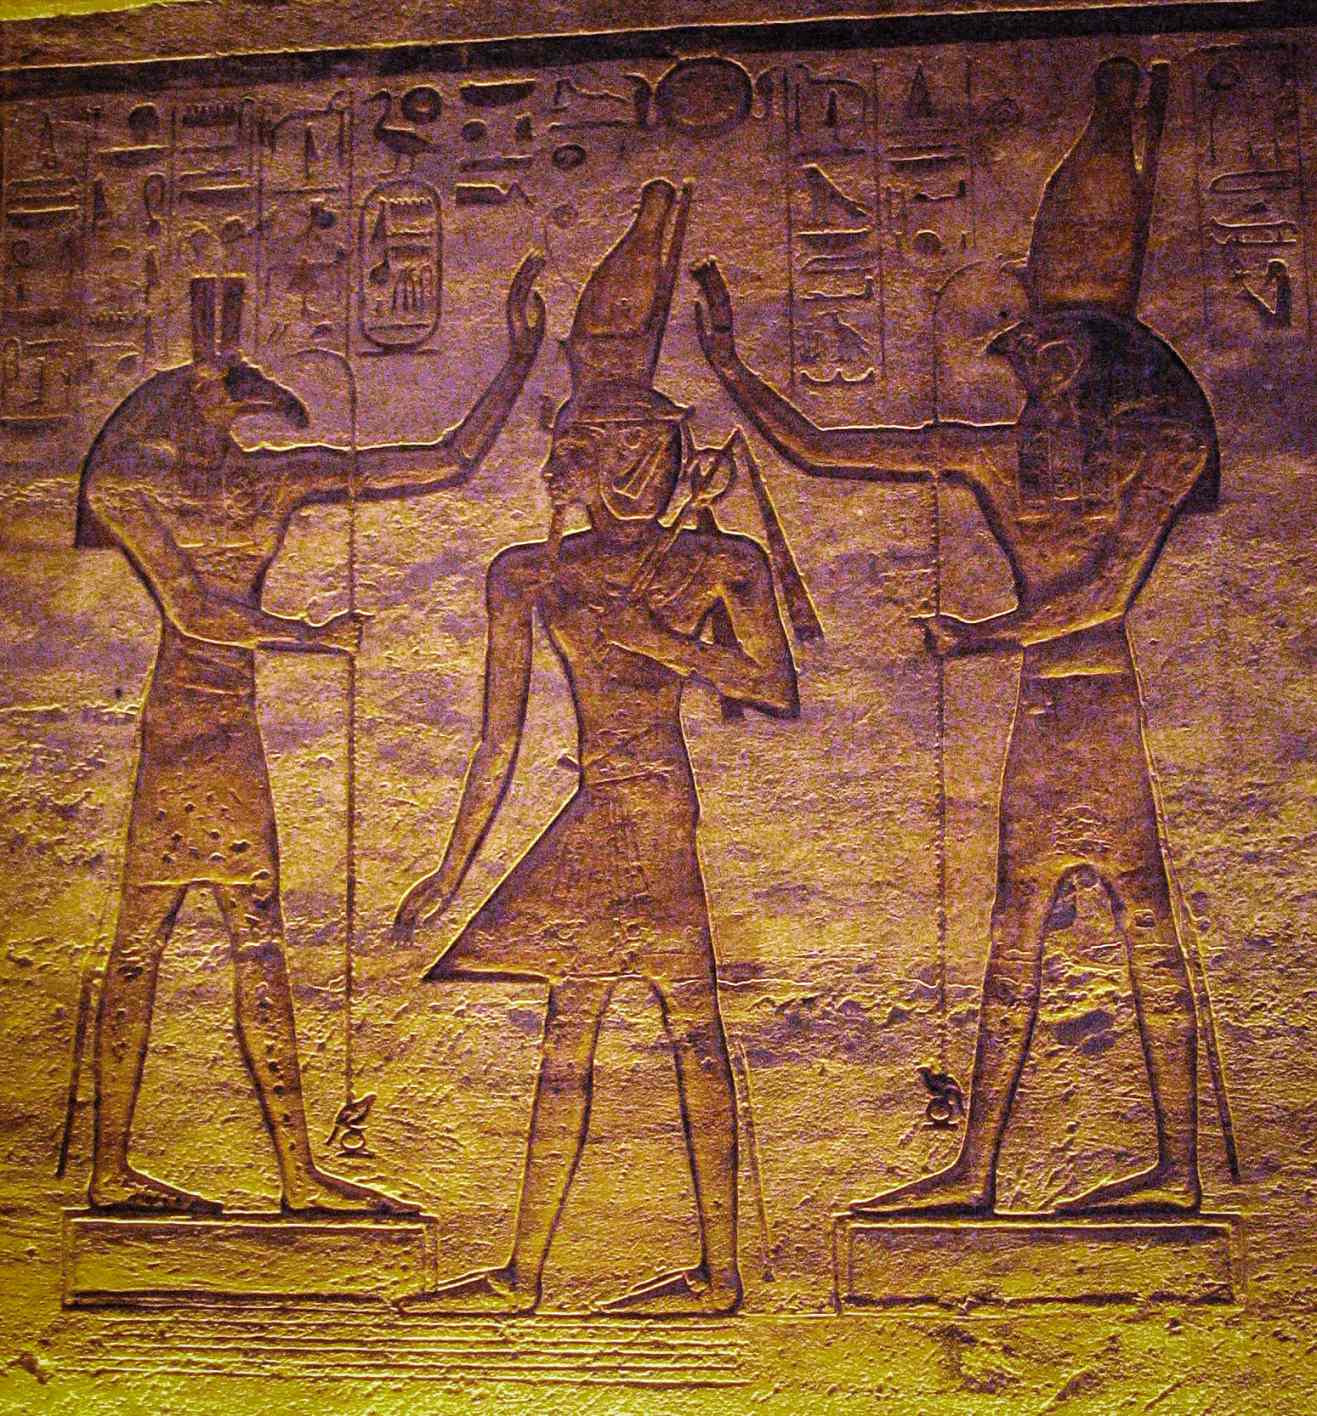 Set (Seth) et Horus adorant Ramsès. L'étude actuelle montre que la lune peut avoir été représentée par Seth et l'étoile variable Algol par Horus dans le calendrier du Caire.